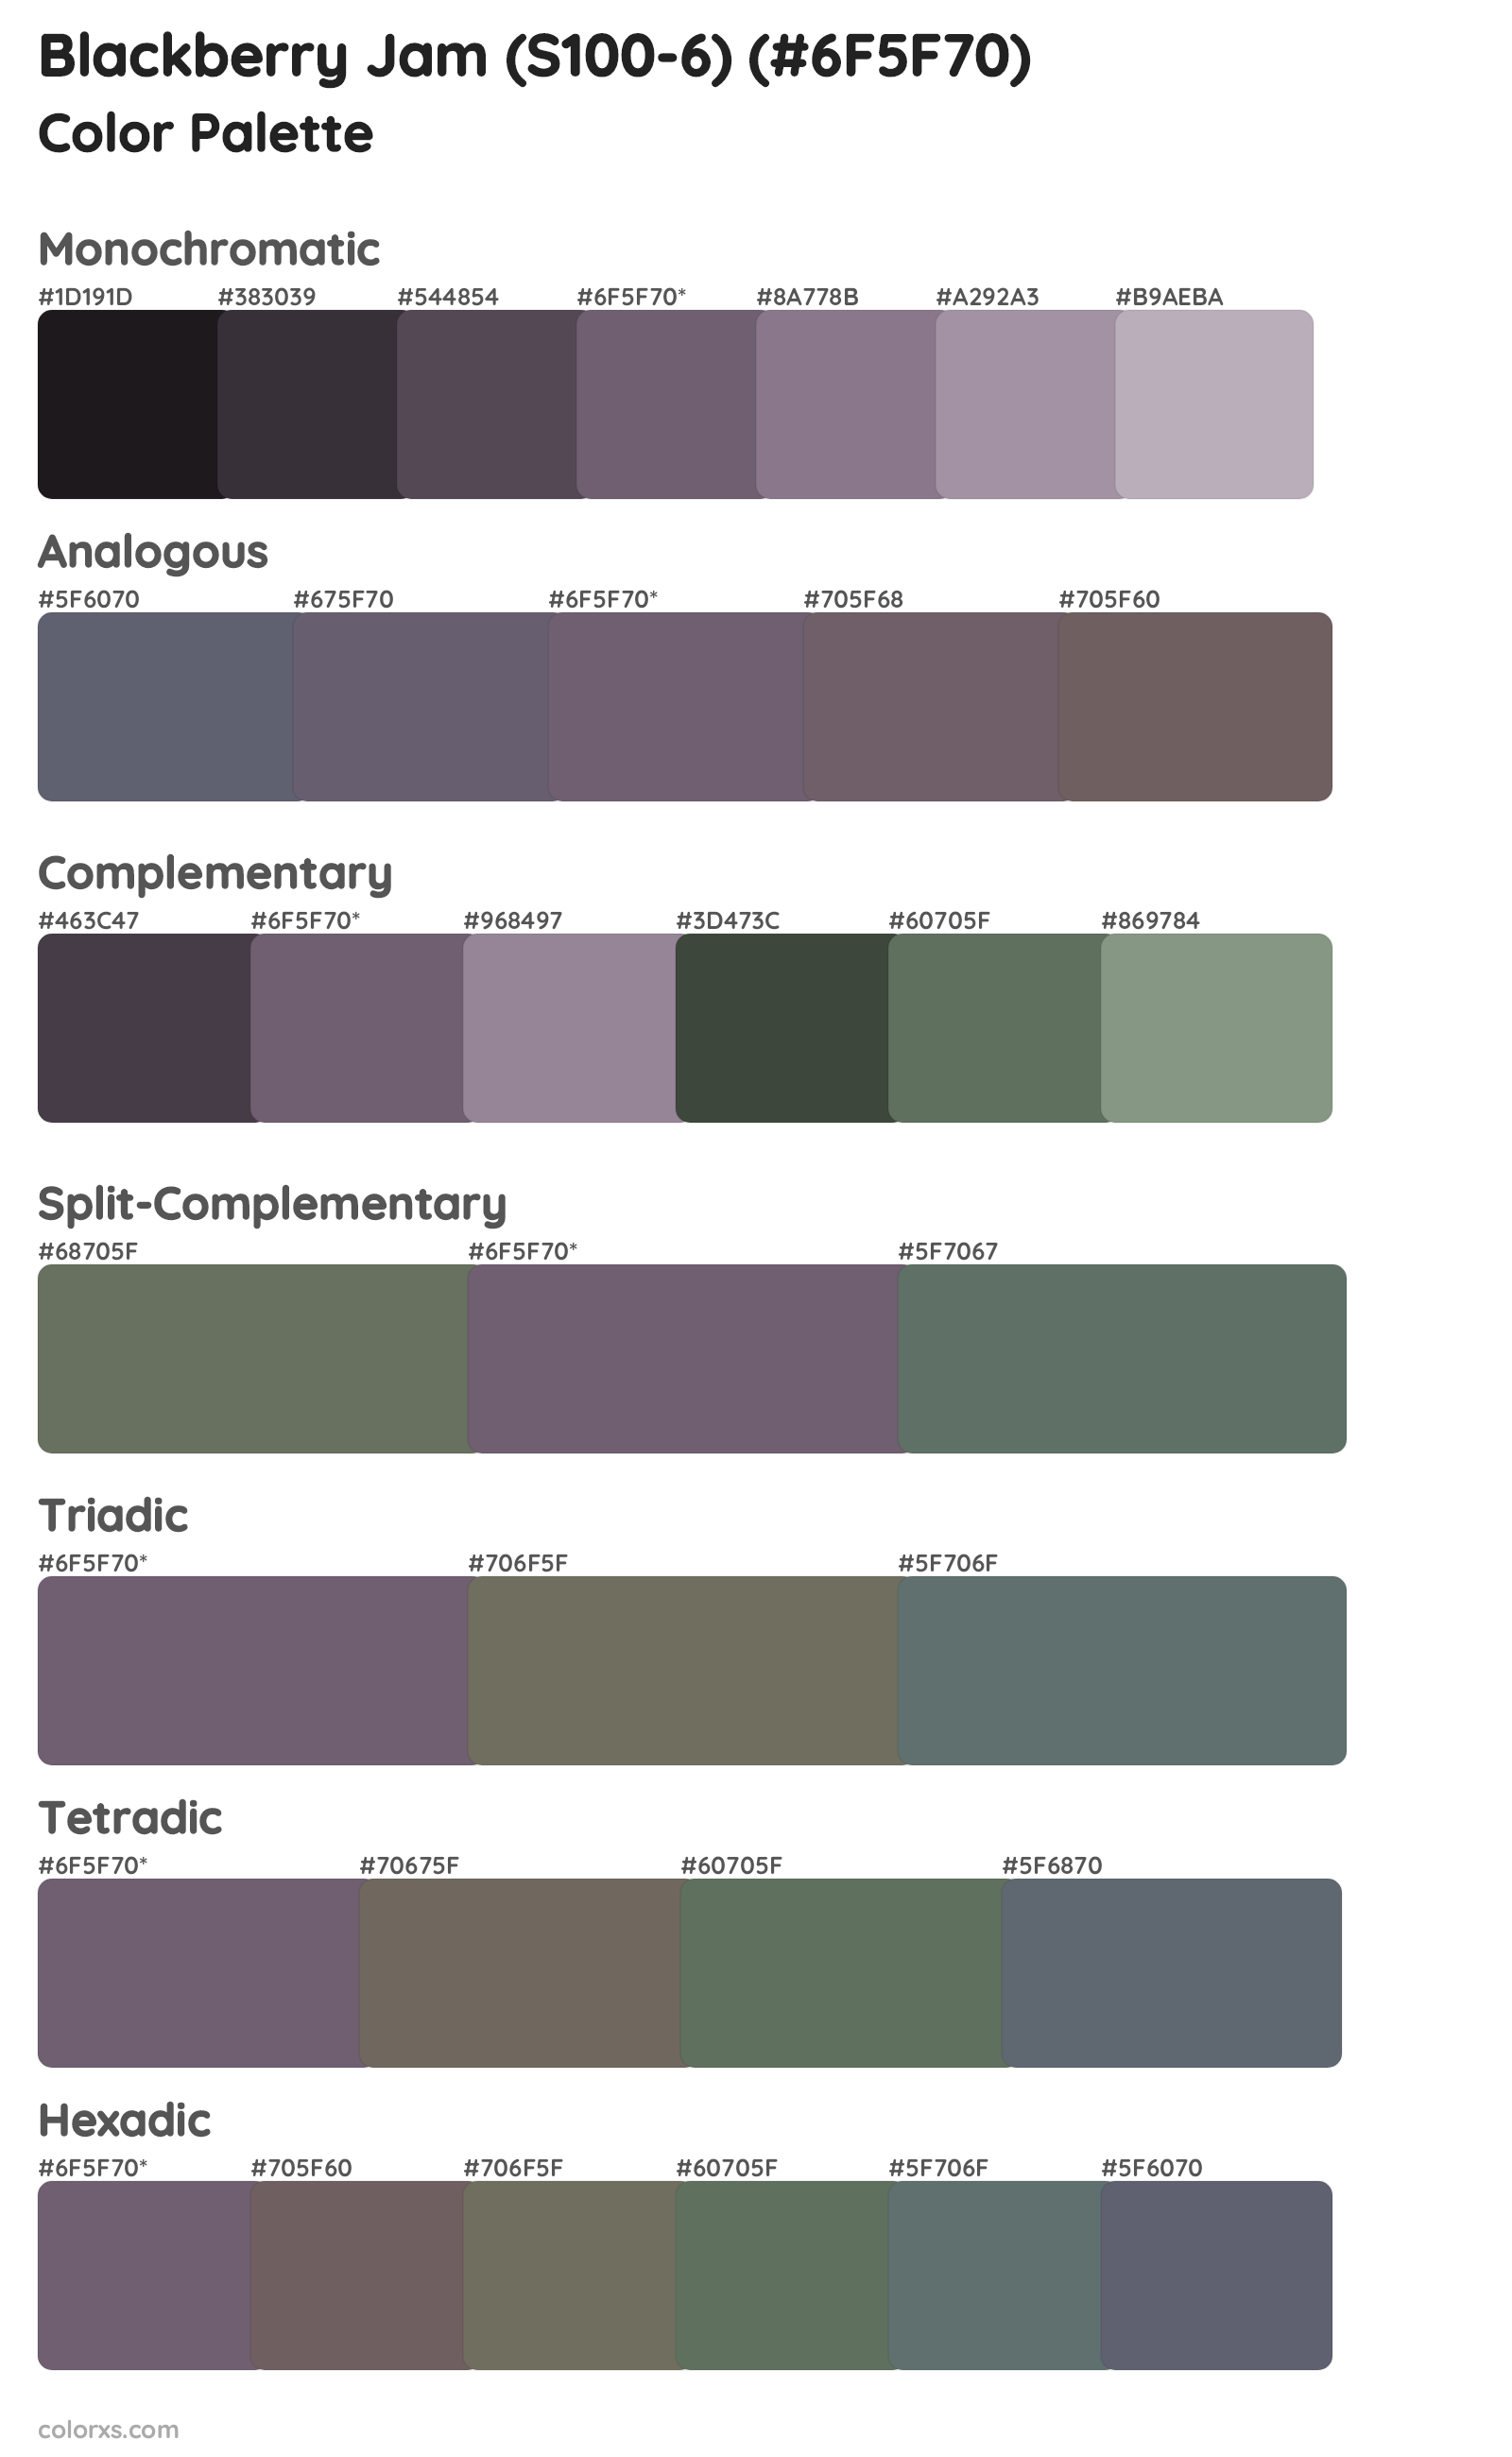 Blackberry Jam (S100-6) Color Scheme Palettes